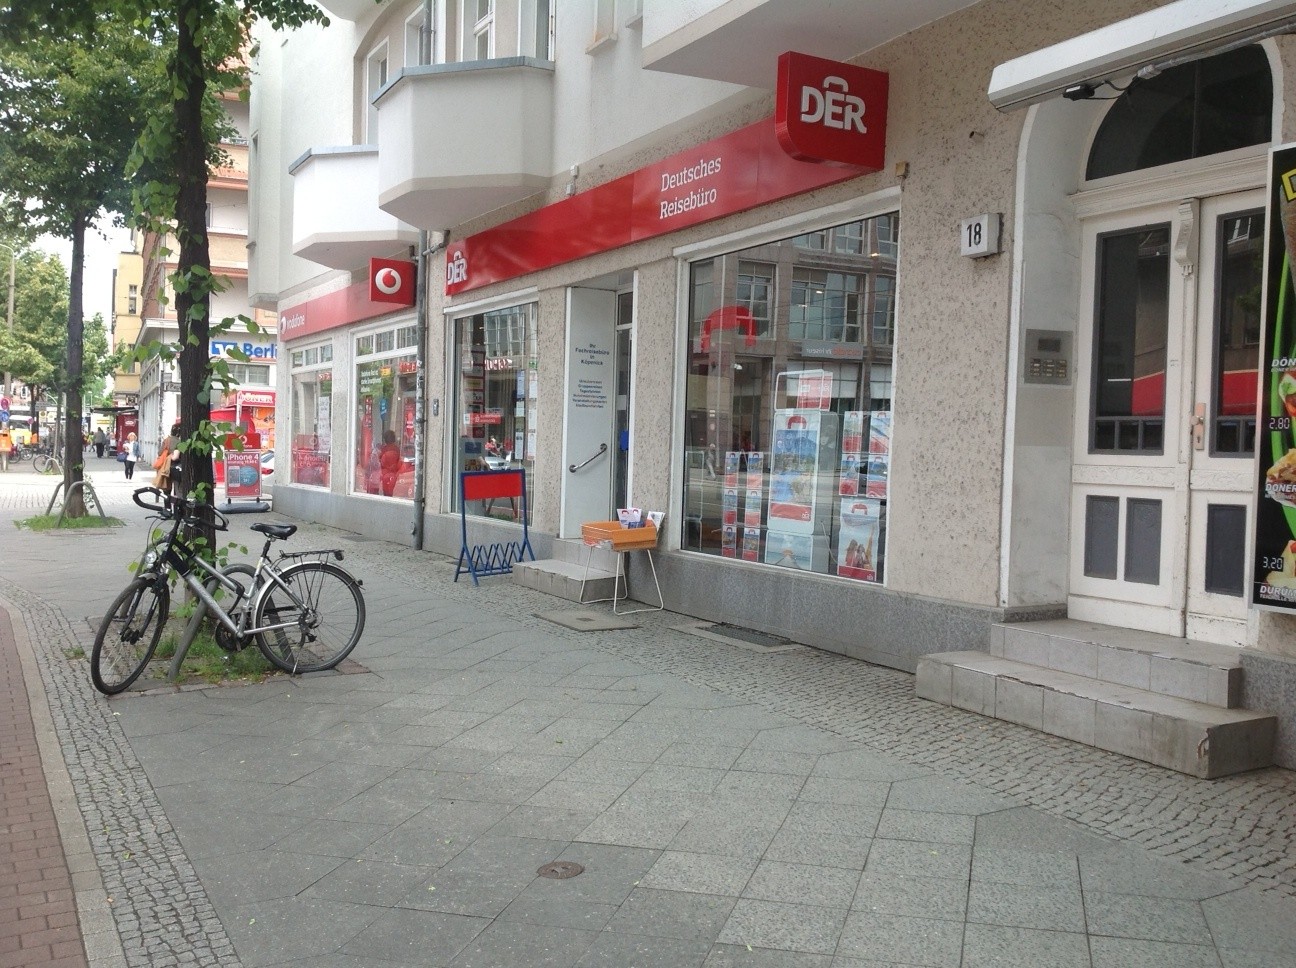 DERTOUR Reisebüro, Bahnhofstraße 18 in Berlin